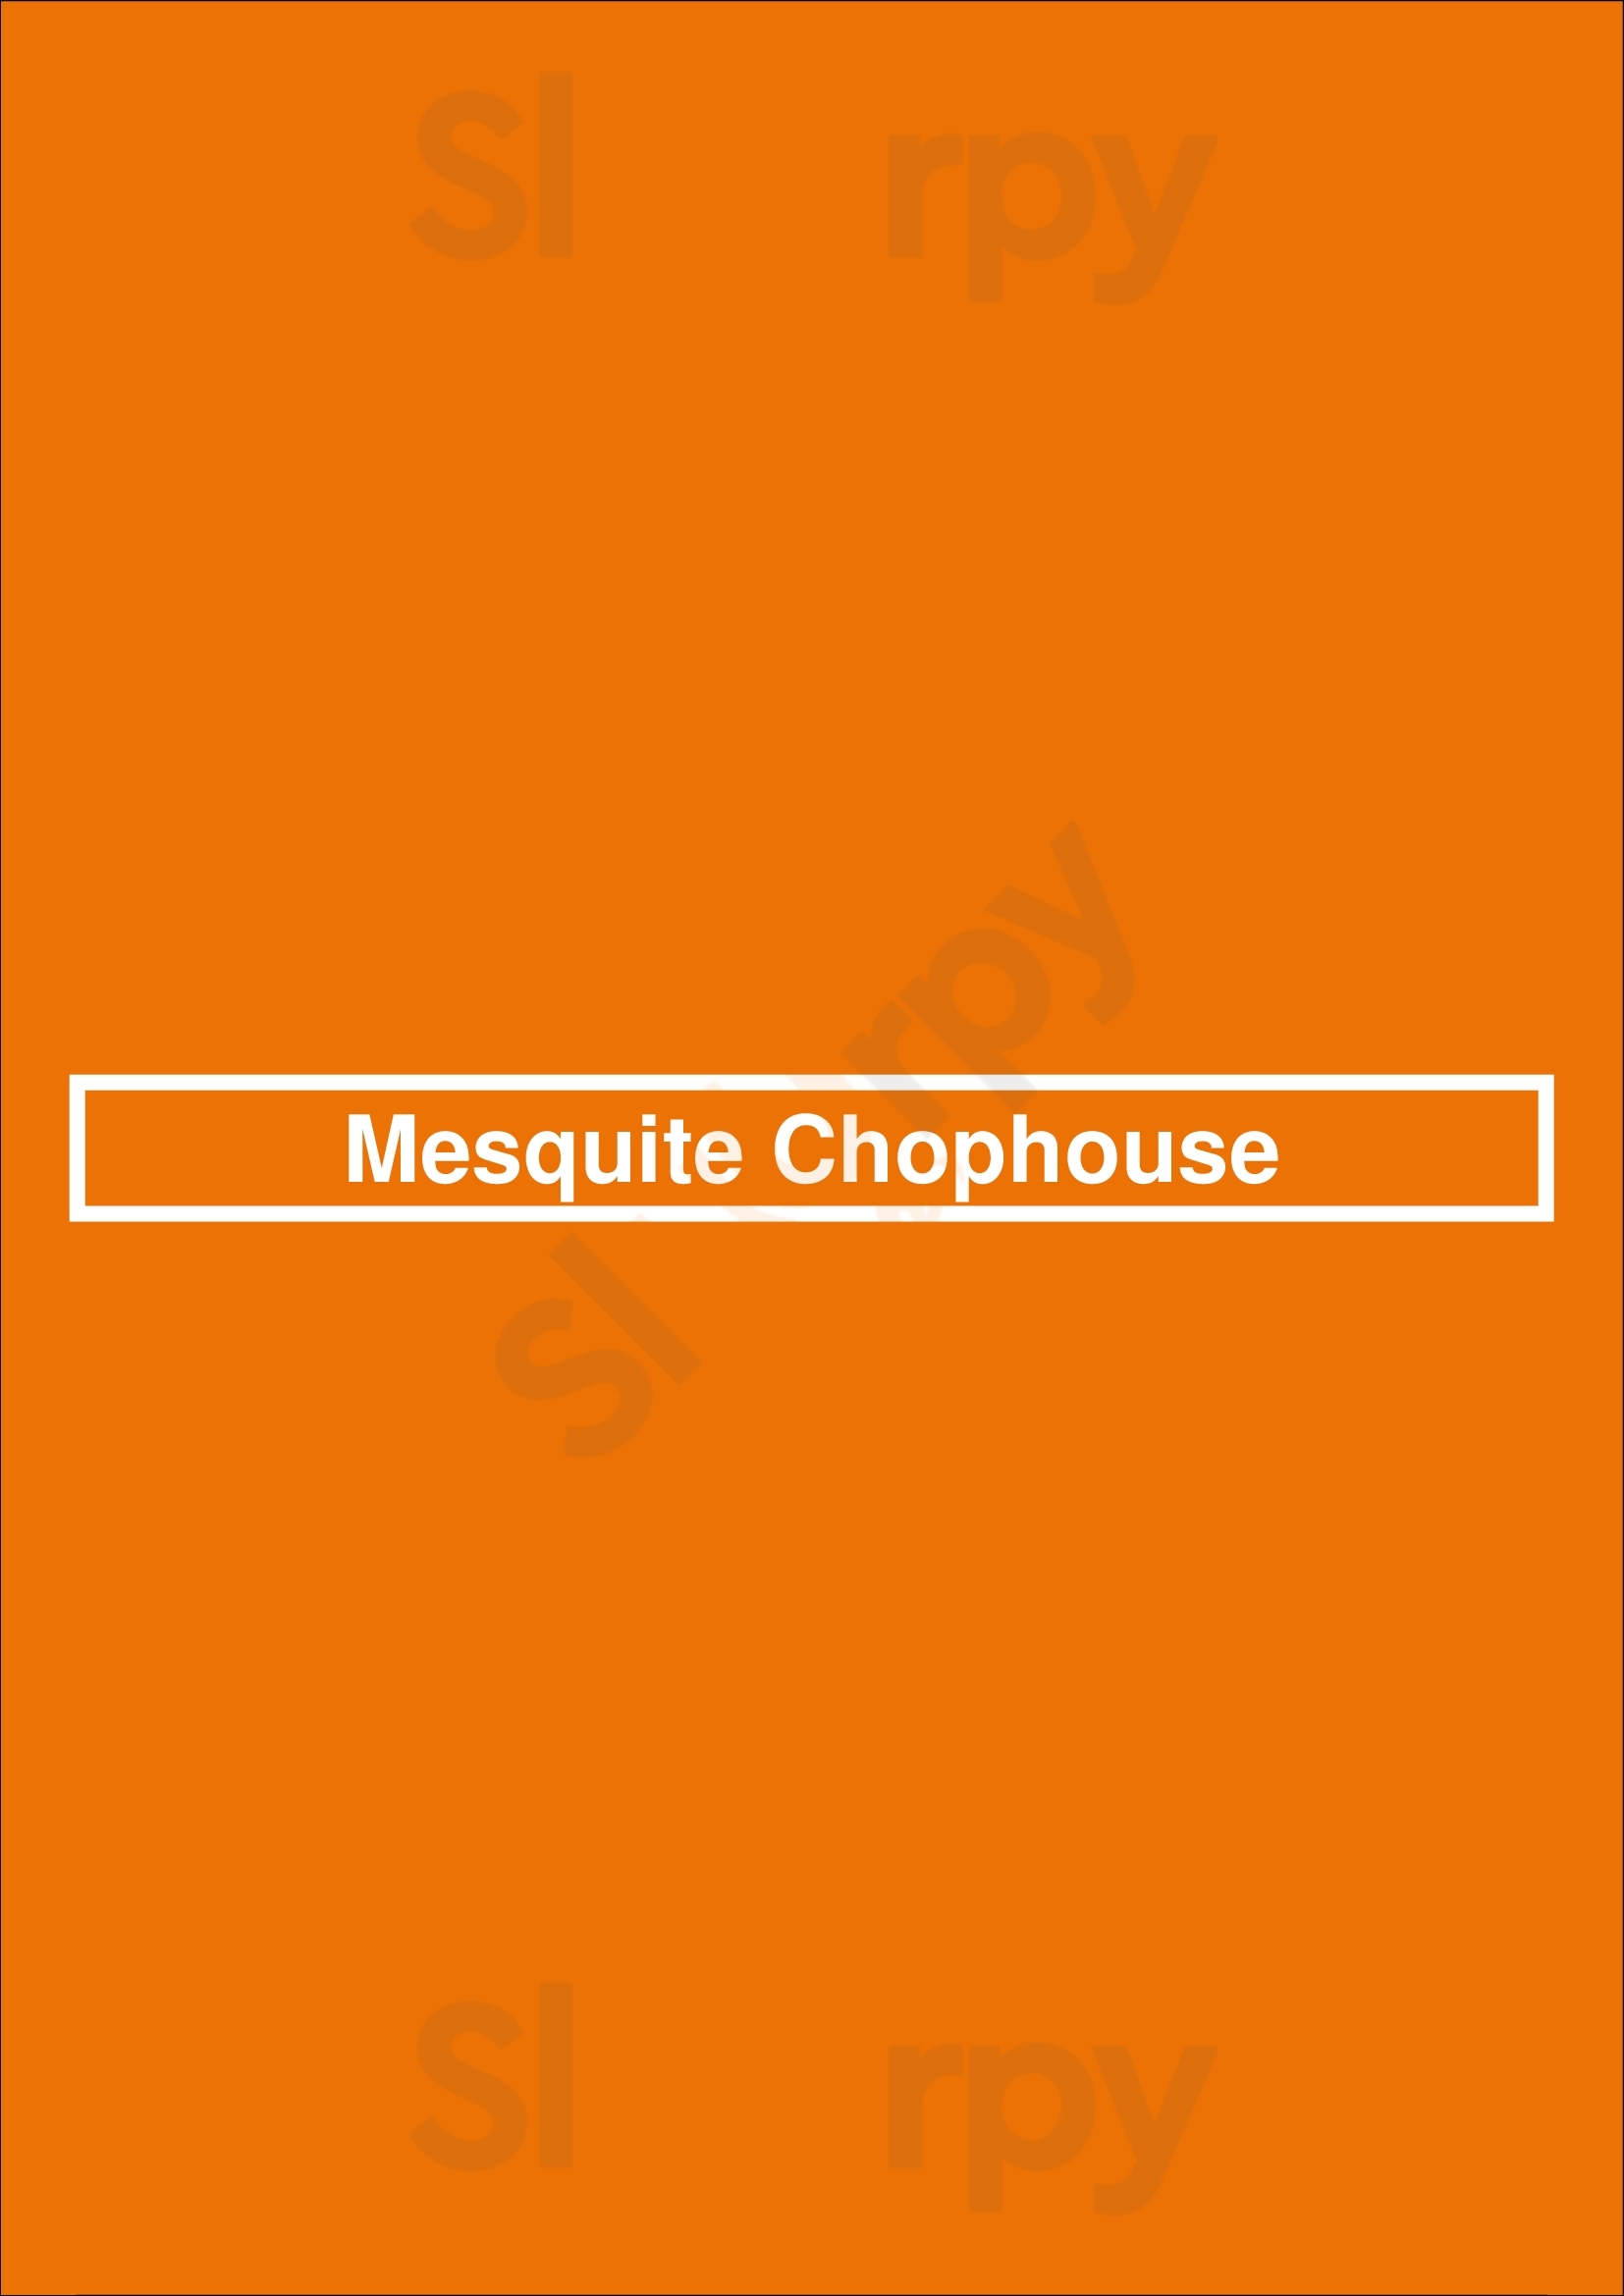 Mesquite Chophouse Southaven Menu - 1